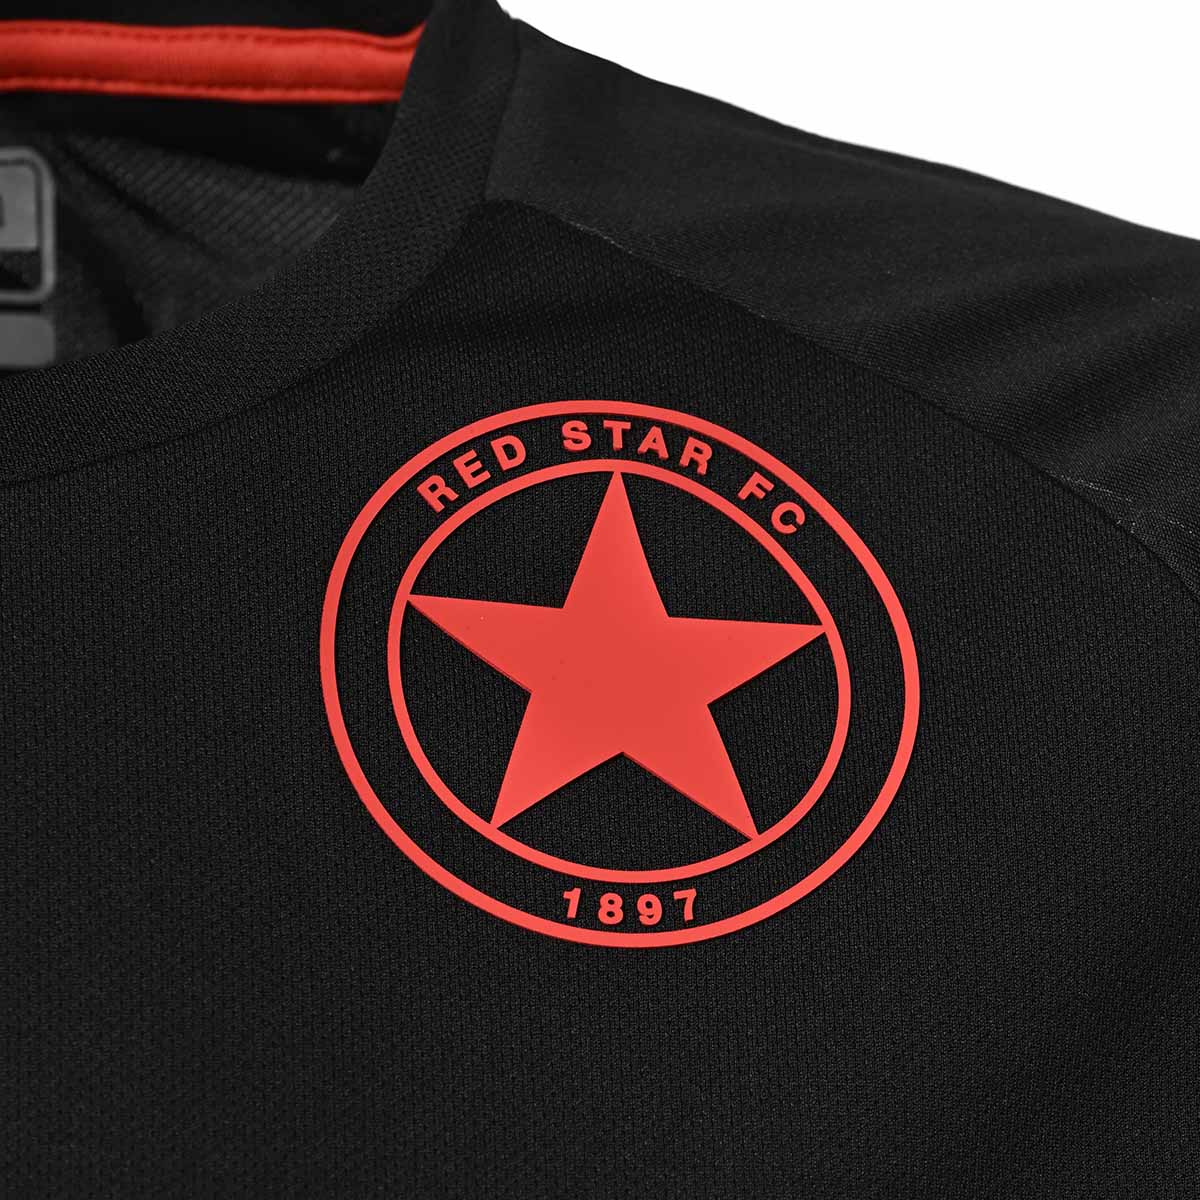 Estrella negra sobre camiseta roja